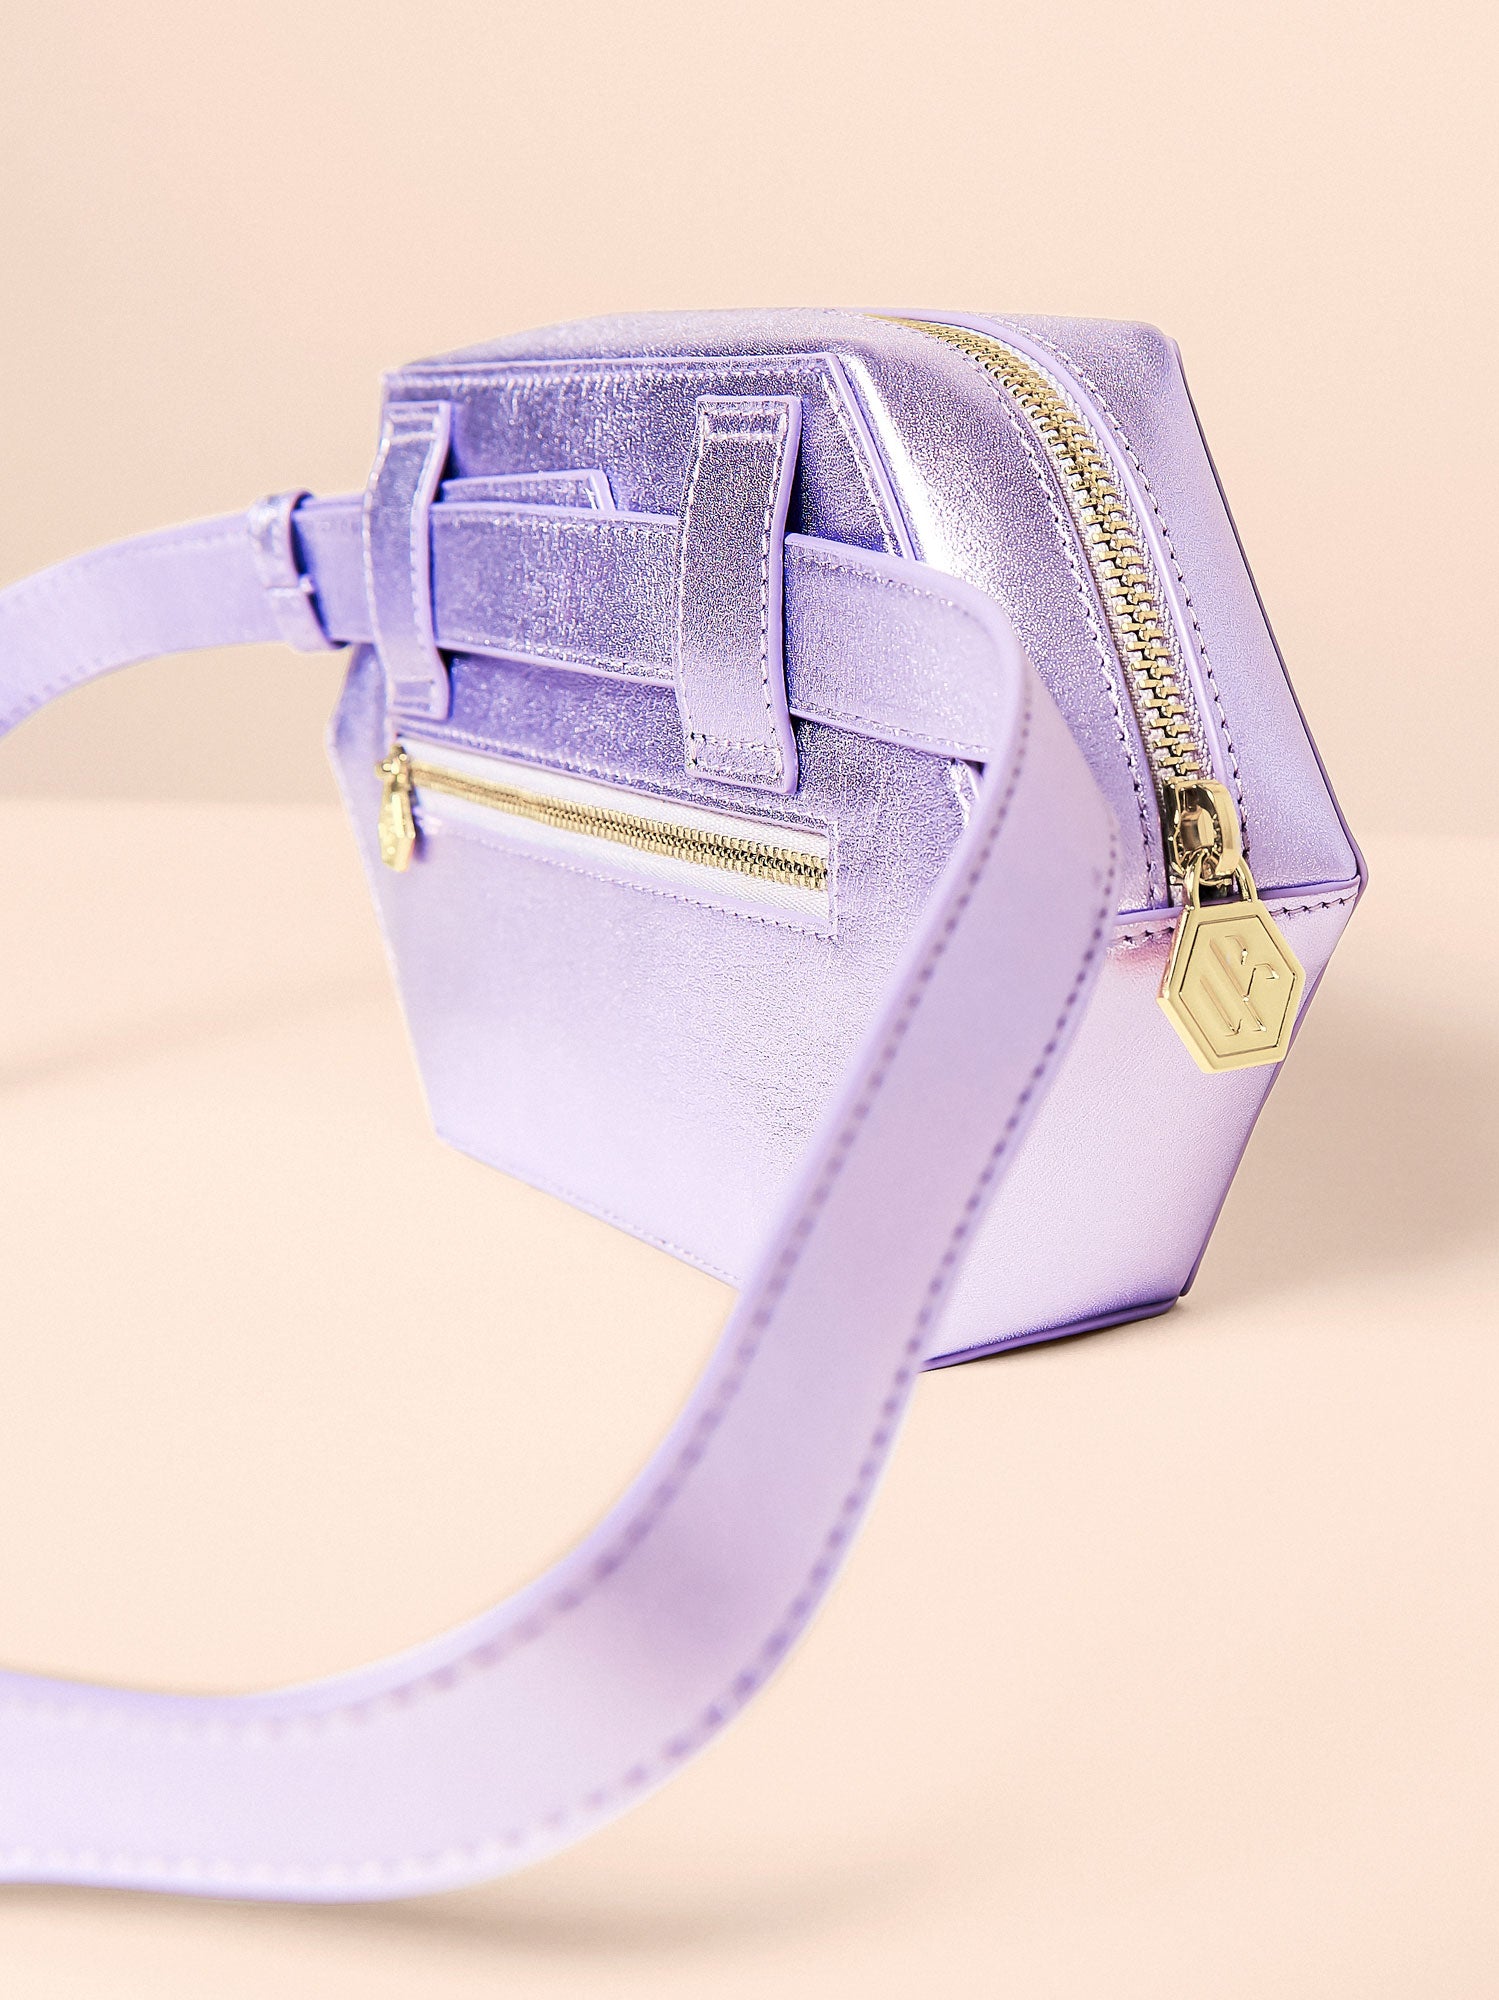 The Friend Belt Bag in Lavender